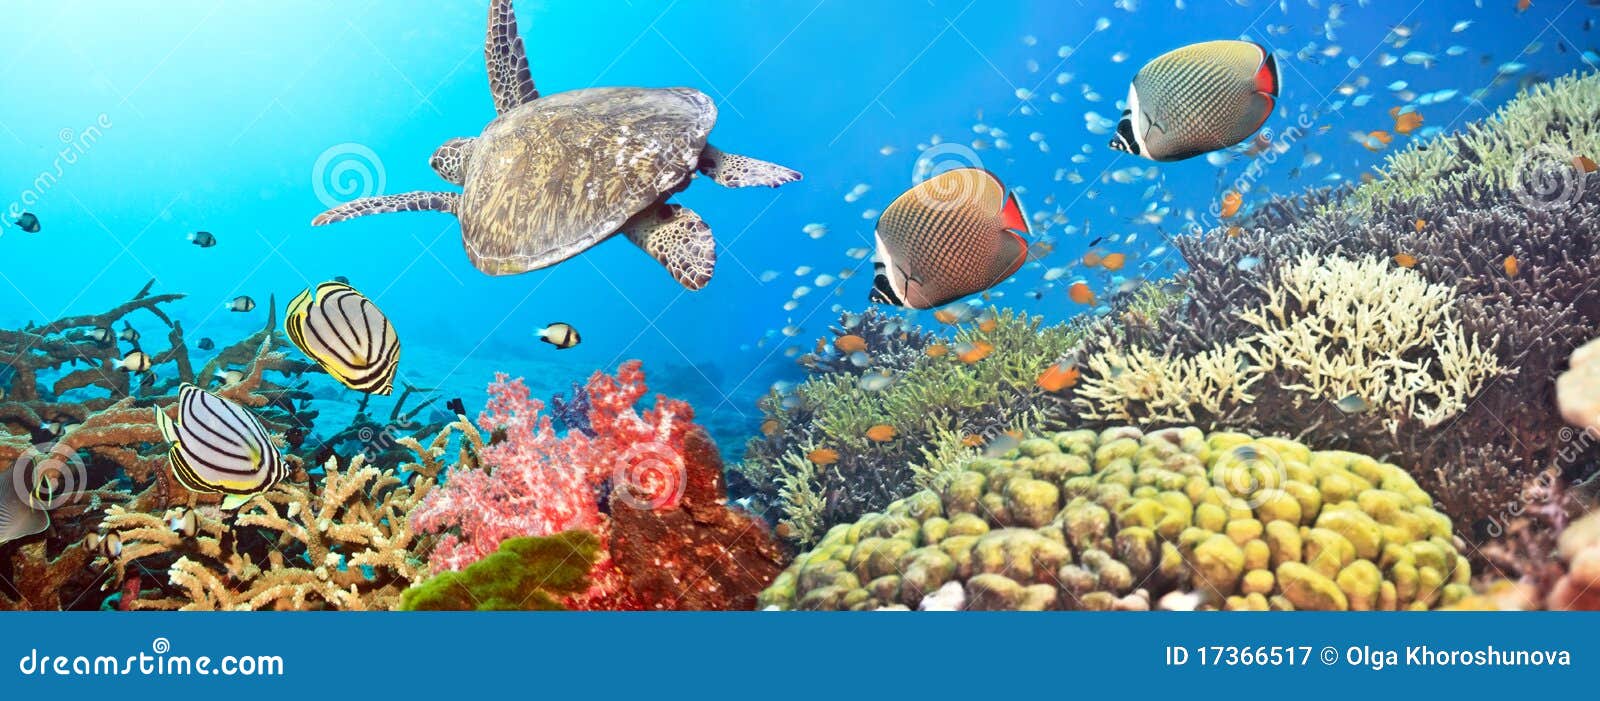 underwater panorama